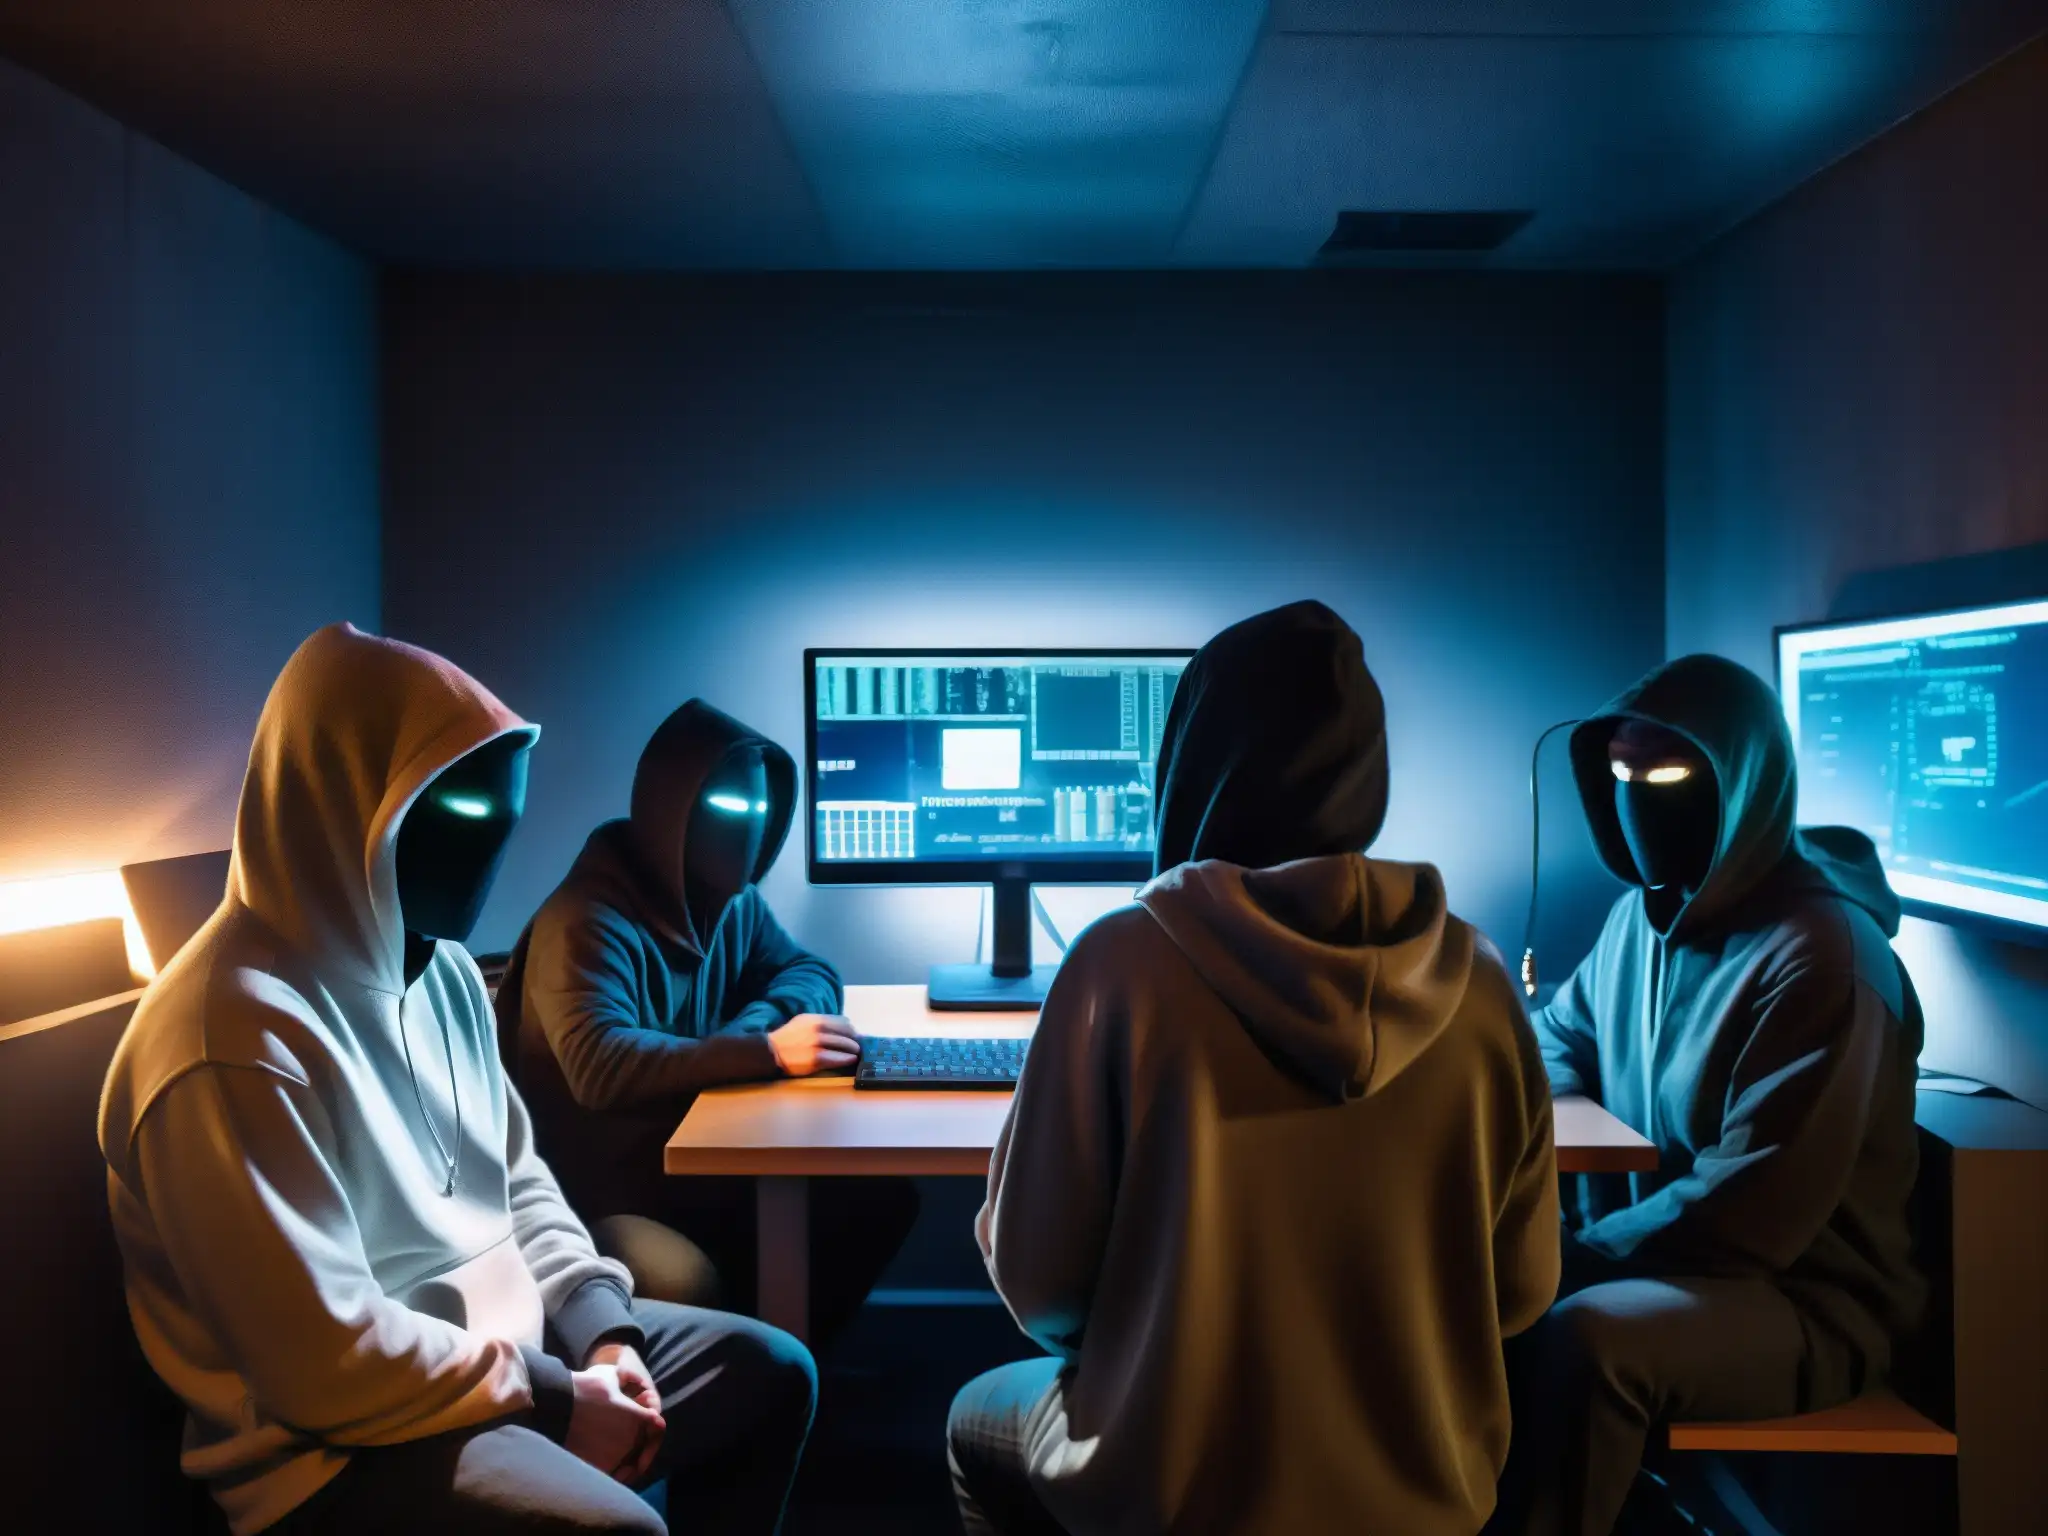 Un grupo de figuras en capuchas y máscaras rodea un ordenador en una habitación subterránea oscura